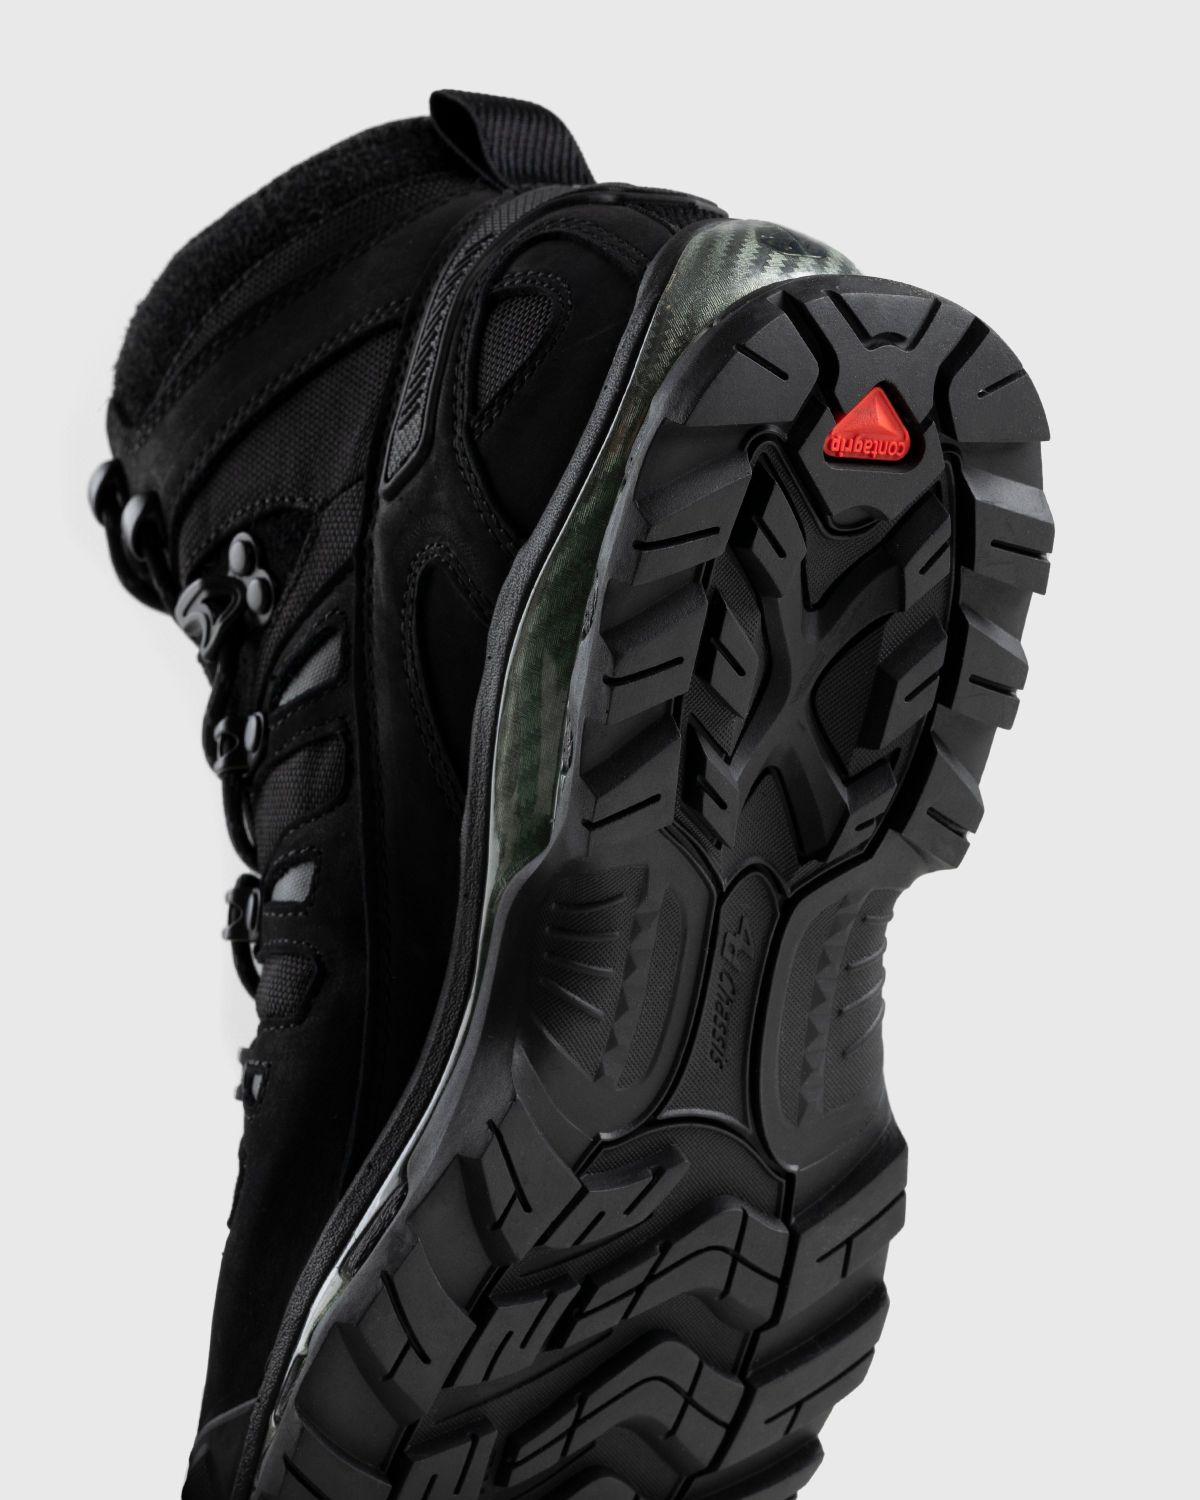 Salomon – Quest 4D GTX Advanced Black - Hiking Boots - Black - Image 6